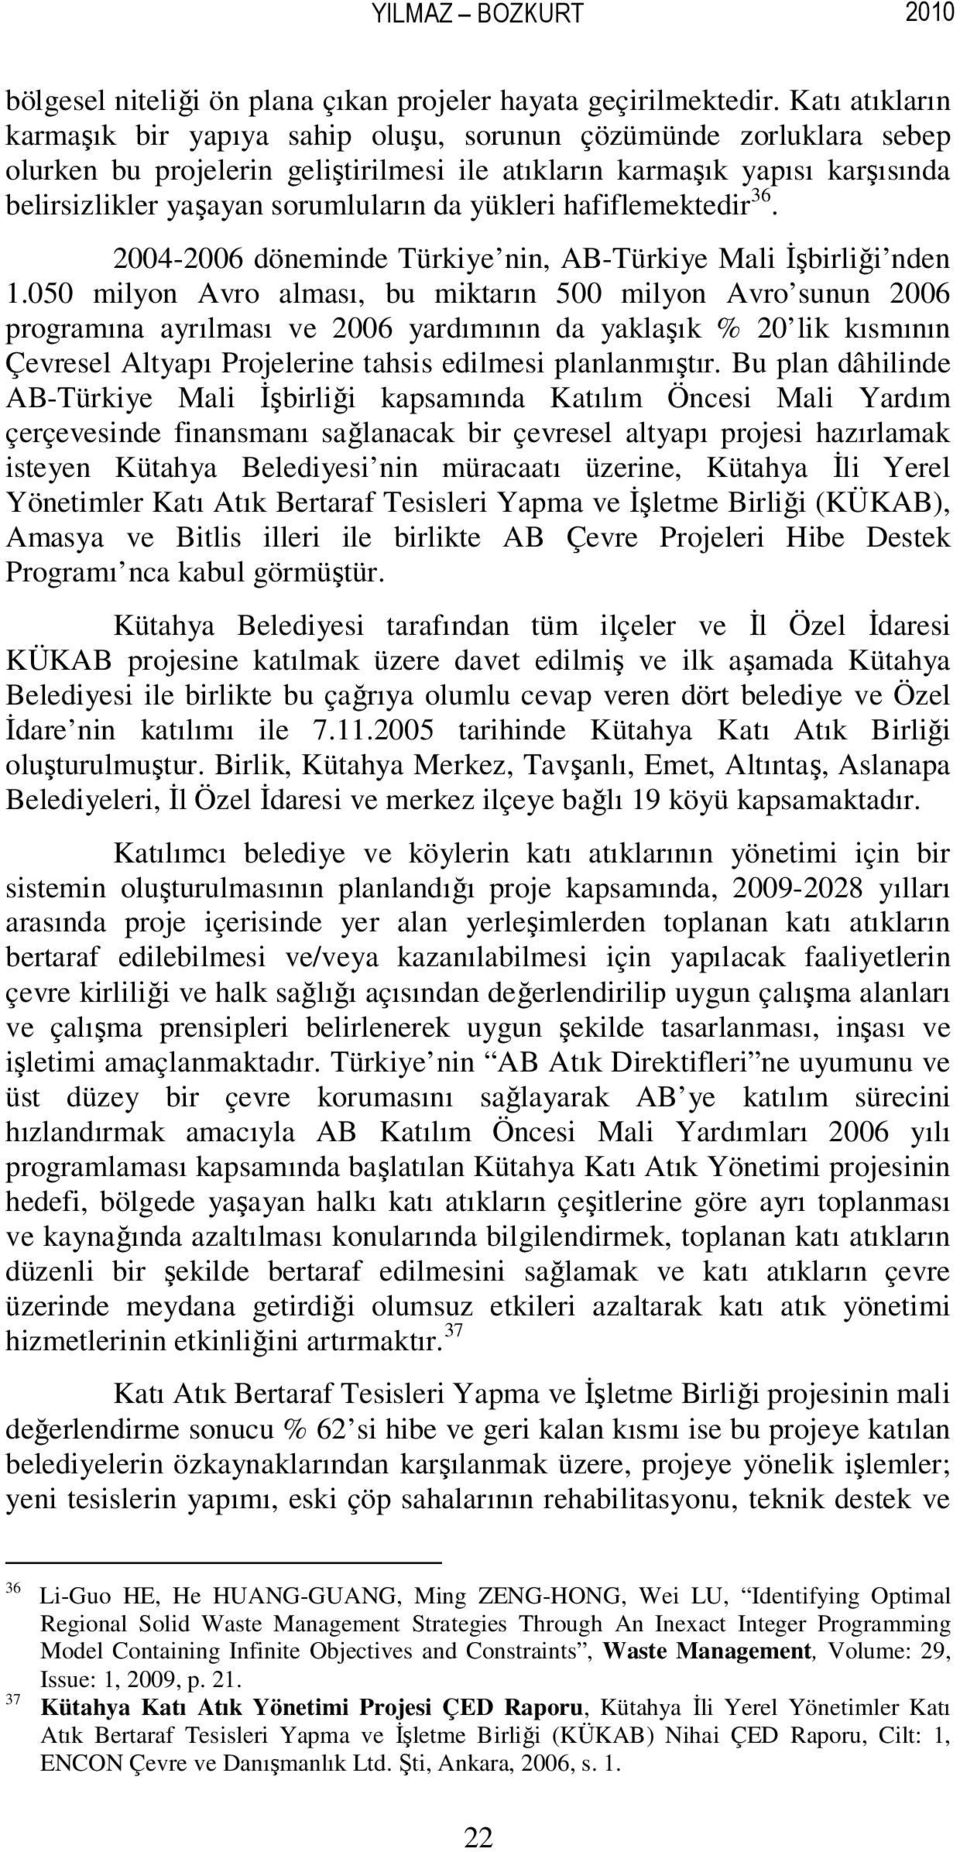 yükleri hafiflemektedir 36. 2004-2006 döneminde Türkiye nin, AB-Türkiye Mali İşbirliği nden 1.